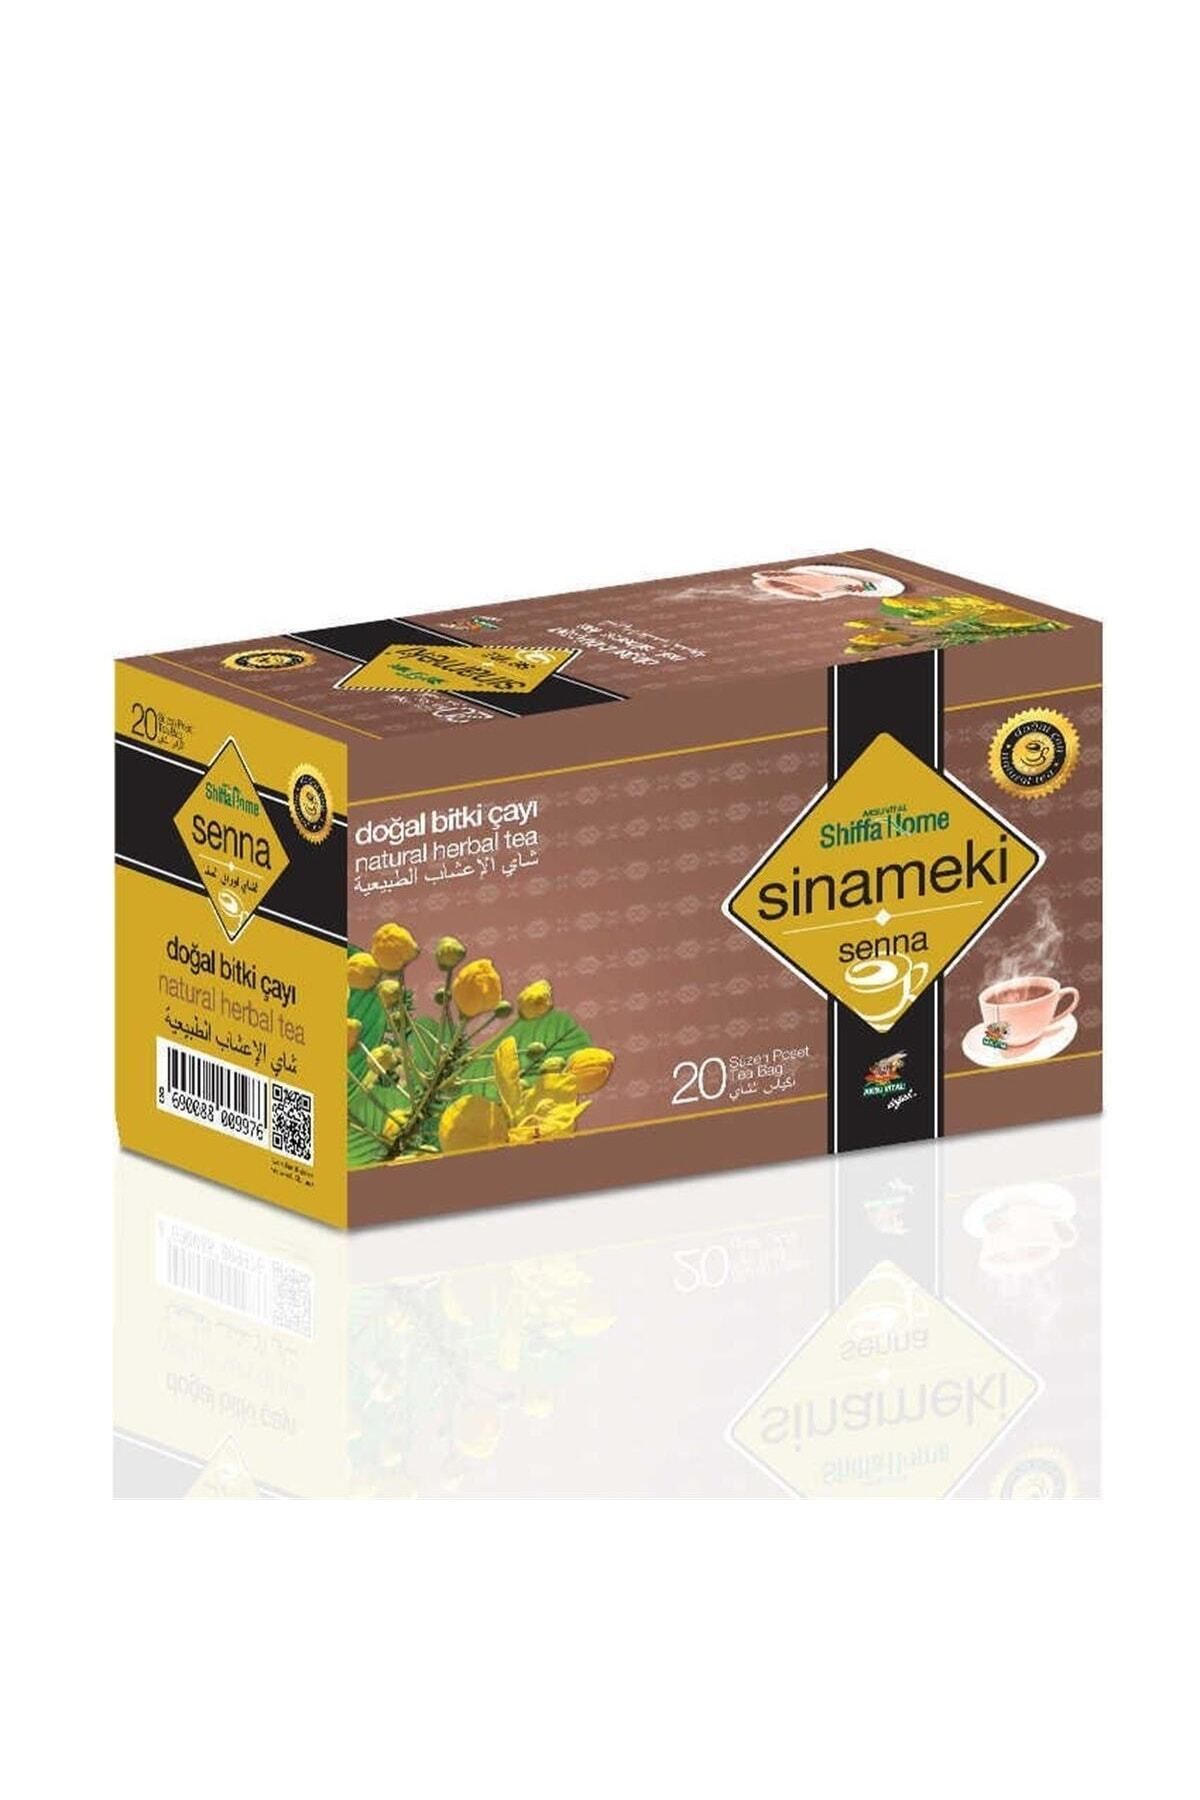 Shiffa Home Sinameki (SENNA) Doğal Bitki Çayı 20 Süzen Poşet